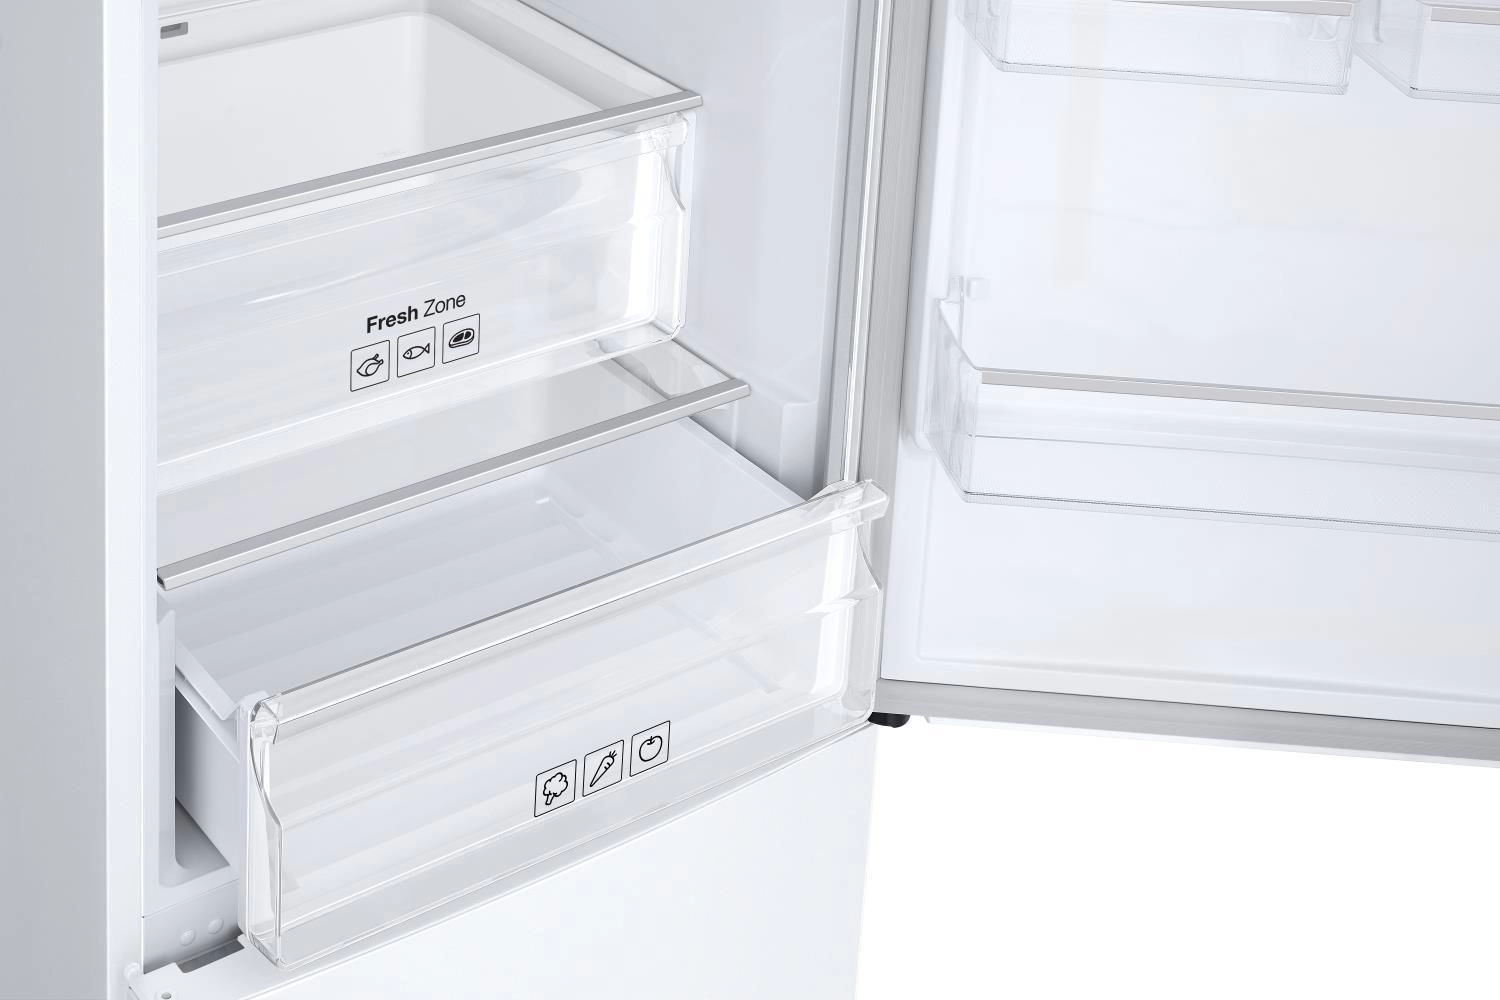 Холодильник с нижней морозильной камерой Samsung RB34N5420WW, 344 л, 192 см, A+, Белый